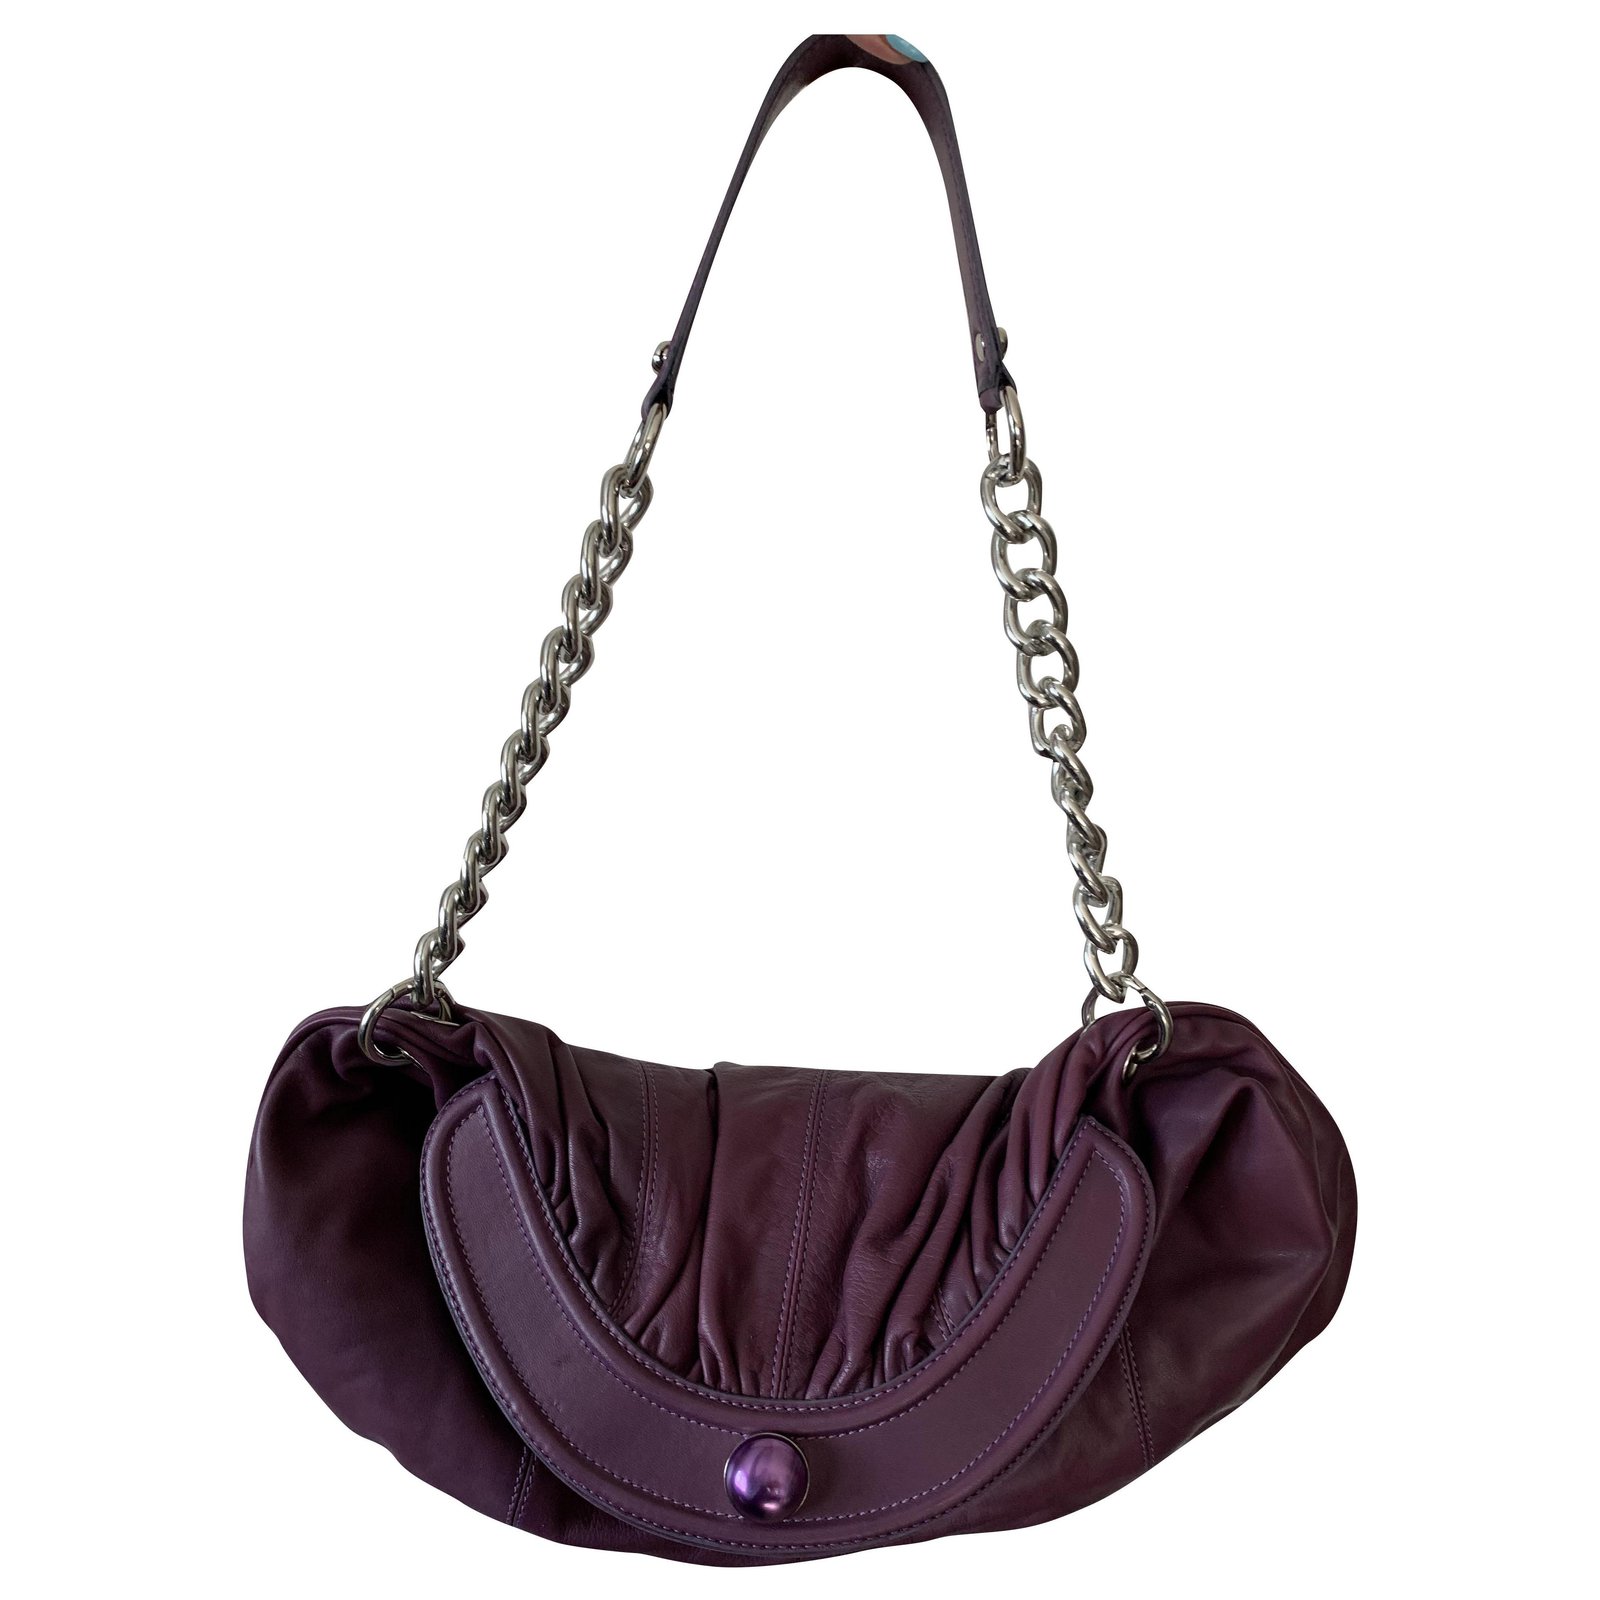 Francesco Biasia Bags & Handbags for Women for sale | eBay